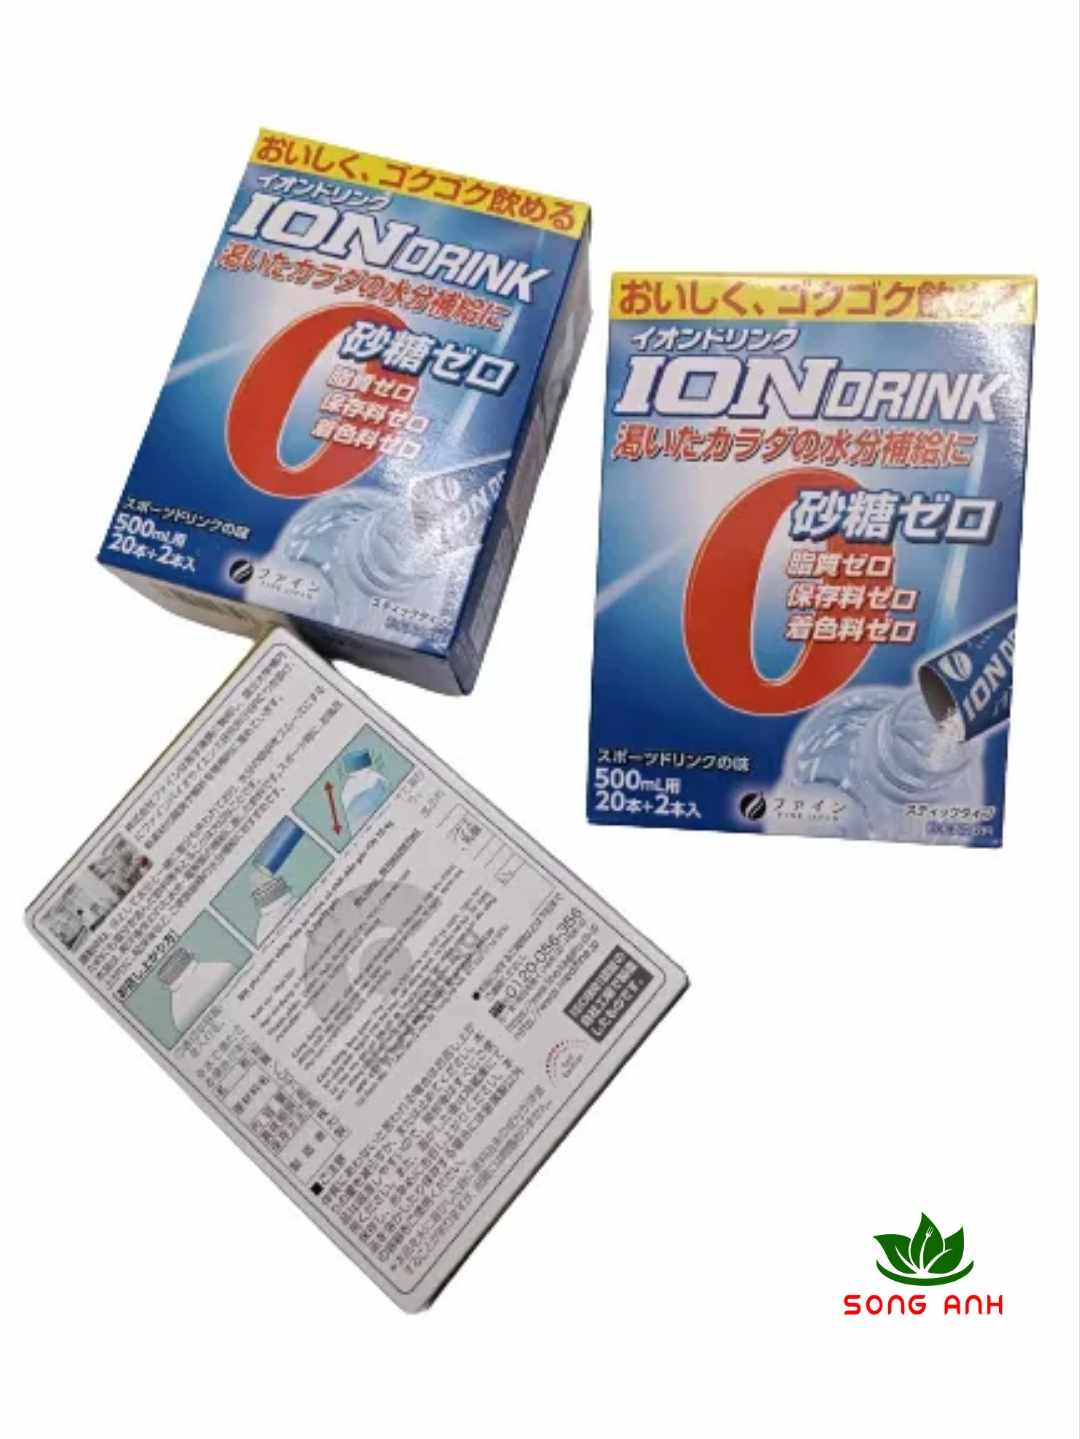 Bột pha nước uống Fine bù nước và chất điện giải ION hộp 22 gói